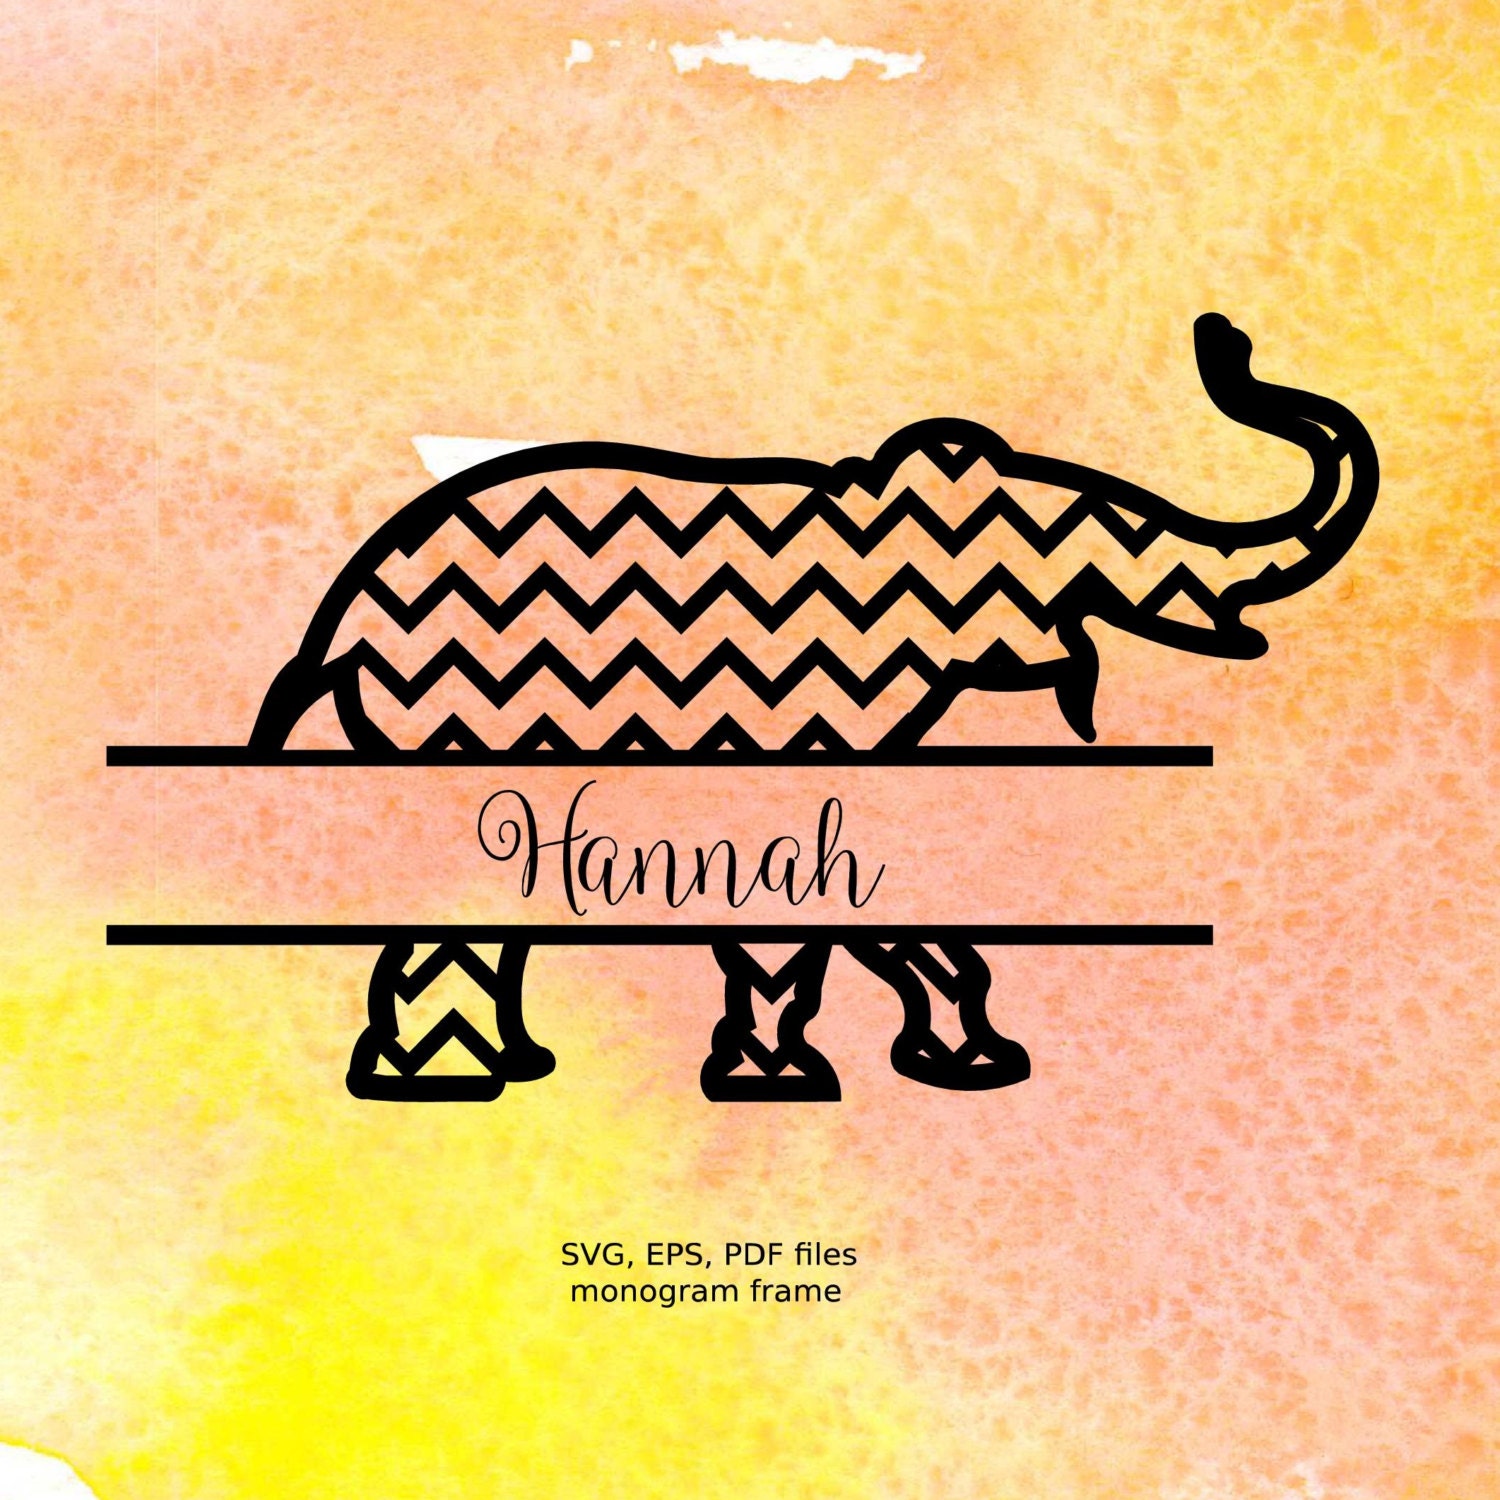 Download Split Elephant SVG Alabama Monogram Frame svg pdf eps files